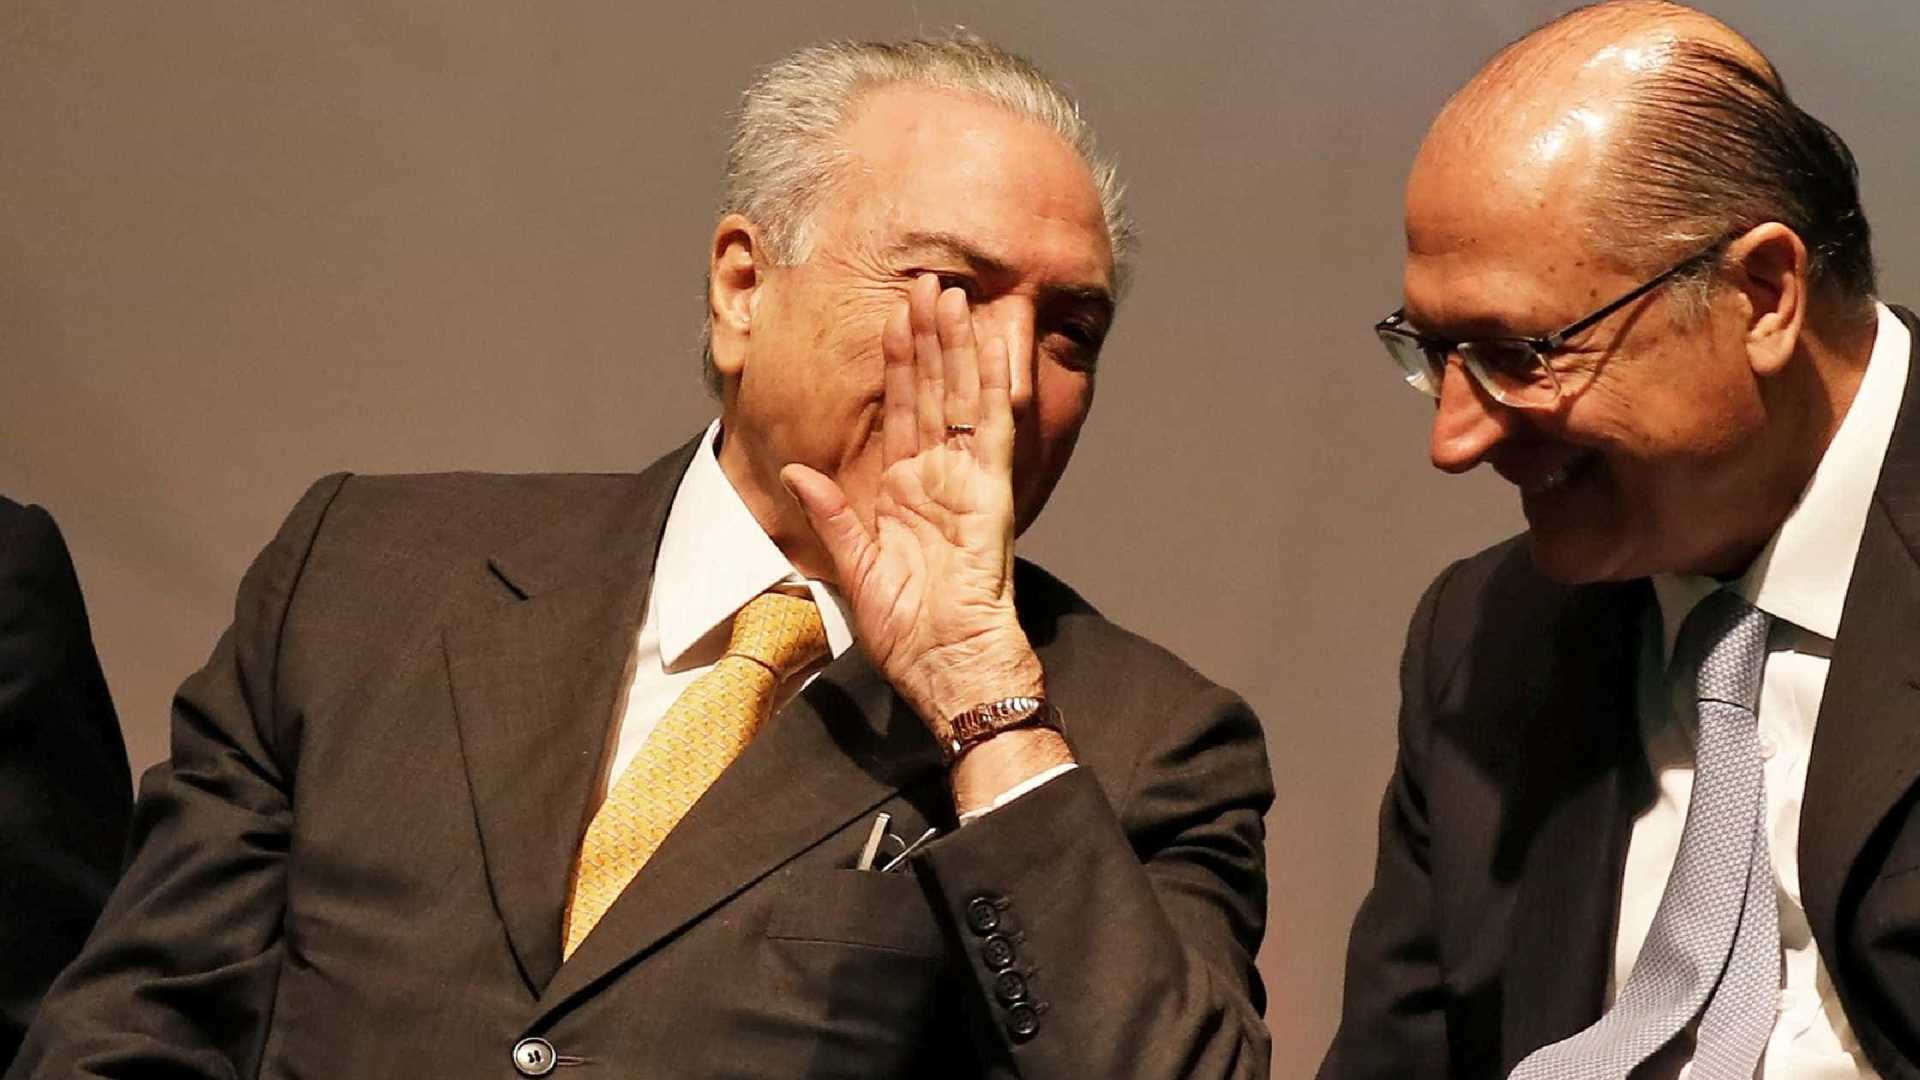 Em troca de apoio, Alckmin pode dar cargo a Temer e blindá-lo com foro